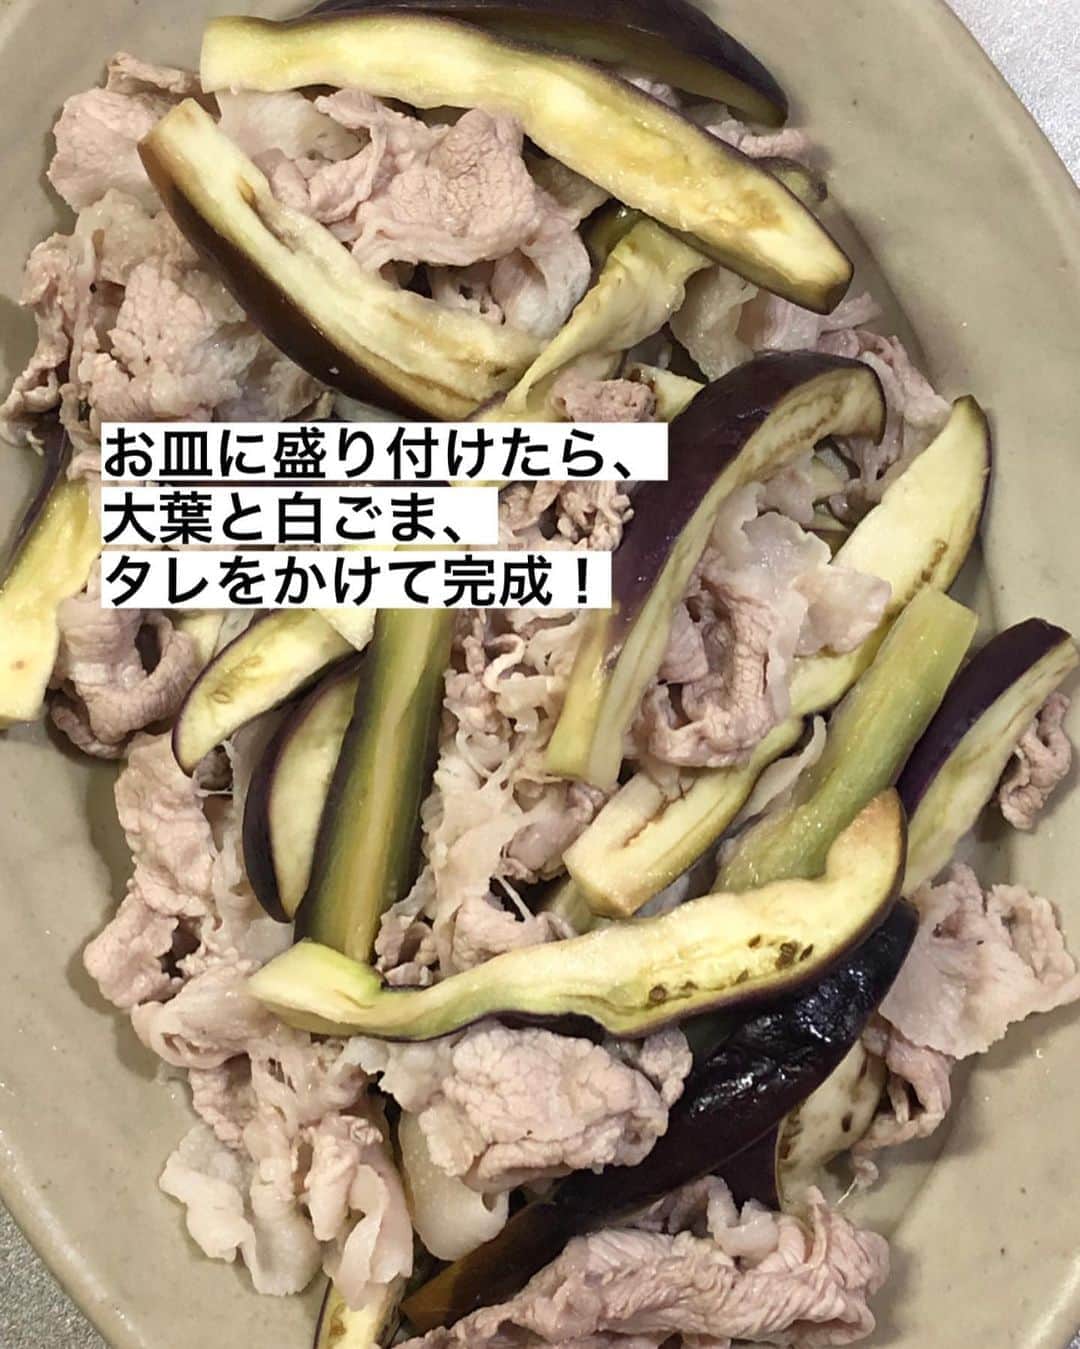 utoshさんのインスタグラム写真 - (utoshInstagram)「【カナダポーク🇨🇦🥩プレゼント企画！】﻿ バルサミコ酢でナスの冷しゃぶ！﻿ ﻿ ーーーーー﻿ ﻿ こんにちは！💁🏻﻿ ﻿ 最近投稿している僕の冷しゃぶが大好評でして…﻿ ﻿ なんと今回、カナダポークさまのご好意で、明日のインスタLIVEでカナダポークを使った2種類の冷しゃぶを作り、ライブ後、カナダポークさんのアカウント @canadapork_japan をフォローの上、カナダポークさんのアカウントに投稿される僕の料理写真にどちらが食べたいかをコメントしてくださった方の中から抽選で10名の方にカナダポークを1.5kgプレゼントしちゃおう企画をさせていただくことになりました！👏🏻👏🏻👏🏻🎉﻿ ﻿ ーーー﻿ ﻿ utoshさん考案！﻿ カナダポークを使った冷しゃぶアレンジ﻿ ﻿ どっちが食べたい？﻿ コメントで教えてね♪﻿ ﻿ 抽選で10名様にカナダポークのしゃぶしゃぶ肉1.5キロをプレゼント！﻿ ﻿ ーーー﻿ ﻿ というですね、可愛らしいタイトルをつけて頂いたんですが😂🔨﻿ ﻿ 明日のインスタLIVEで作るのは、先日投稿した「粒マスタード酢のブロッコリー冷しゃぶ」と、この「バルサミコ酢のナスの冷しゃぶ」です！﻿ ﻿ まとめると﻿ ﻿ ①明日、僕のインスタライブを見る﻿ ﻿ ②カナダポークさんのアカウント @canadapork_japan をフォロー﻿ ﻿ ③カナダポークさんのアカウントに投稿されるキャンペーン画像に、LIVEで作った冷しゃぶのうち「どっちが食べたいか」をコメント﻿ ﻿ →抽選で10名の方にカナダポーク 1.5キロプレゼント！﻿ ﻿ という、夢のような企画です！﻿ ﻿ ぜひ参加してみたいという方はこの投稿によコメントください！﻿ ﻿ ぜひぜひお待ちしております！😄﻿ ﻿ ーーーーーー✂︎ー﻿ ﻿ ﻿ それから、プレゼント企画をやる前に知っておいて欲しい事があります！﻿ ﻿ それは〈カナダポークの安心、安全について〉です。﻿ ﻿ ﻿ カナダ産豚肉（カナダポーク）は安心安全な7つの約束があるんです。﻿ ﻿ 実は、今現在、日本に入ってきているカナダ産豚肉は、いわゆる成長ホルモンを使っていません。この部分で外国産のお肉を買わないという人も安心して食べることができる豚肉になっています。﻿ ﻿ これは僕たちの安全でもありますが、豚たちも体の負担が少ないやさしい決まり。﻿ 肉として扱うのではなくて、きちんと生き物として行き届いた飼育をしていこうというアニマルケアの一つでもあります。﻿ ﻿ ﻿ こういった約束はカナダの畜産農家産たちが自分たちで動いて作った国の企画なんですって。﻿ だから安心して食べることのできるお肉になってます。﻿ ﻿ ー﻿ ﻿ 今、世界はサスティナブルの方向に大きく動いています。﻿ 日本も取り残されないように頑張らないといけないですね。﻿ ﻿ ﻿ ー✂︎ー﻿ ﻿ ﻿ ✔️〈このレシピのポイント〉﻿ ﻿ ・茹でる時に弱火にしてコップ一杯の水を入れて温度を下げてから茹でると柔らかく茹でることができます。﻿ ﻿ ・茹でたらザルにあげて、冷水につけるのではなく、少量の酢水でさっと絡めてあげるだけでOK。﻿ ﻿ ﻿ ﻿ レシピはこちら↓﻿ ＿＿＿＿＿﻿ ﻿ バルサミコ酢でナスの冷しゃぶ（2人分）﻿ ﻿ 【材料】﻿ 〈カナダポーク〉﻿ 薄切り肉 200g﻿ ナス 2本﻿ 大葉 2枚﻿ ﻿ A（冷しゃぶ用）﻿ お酢　大さじ1﻿ 水　大さじ3﻿ ﻿ B（ドレッシング）﻿ バルサミコ酢　大さじ1﻿ メープルシロップ 小さじ1﻿ （たまに甘いバルサミコ酢があるので、そういう時は入れなくていい） オリーブオイル 大さじ1﻿ 塩 小さじ1/4程度﻿ ﻿ 〈トッピング用〉﻿ 白ごま　適量﻿ ﻿ ﻿ 【作り方】﻿ （1）（1）ナスを縦に8等分に切り、600Wのレンジで4分加熱する。大葉を千切りにする。Aのお酢と水を合わせておく。Bのドレッシングを作っておく。﻿ ﻿ （2）お湯を沸かした鍋にコップ一杯の水を入れ、温度を下げて豚肉を入れ、ゆっくり豚肉を茹で、とりだしたらザルにあげ、Aを回しかけ冷ます。﻿ ﻿ （3）お皿に1のナスと2の冷しゃぶを盛りつけ、大葉と白ごまを振り、Bのドレッシングをまわしかけたら完成。﻿ ﻿ ﻿ ＿＿＿＿＿﻿ ﻿ ぜひ作ってくださいね！﻿ No local No food おいしく楽しく！﻿ ﻿ ﻿ #冷しゃぶ #カナダポーク #カナダポークでおいしくなぁれ﻿ #スタートUPレシピ #スタートアップレシピ #ややはつレシピ #在宅楽飯﻿ ﻿ #おうちごはん #レシピ #時短料理 #簡単レシピ #献立 #お家ご飯 #フーディーテーブル﻿ #japanesefoods #やさしい飯」8月26日 10時50分 - utosh